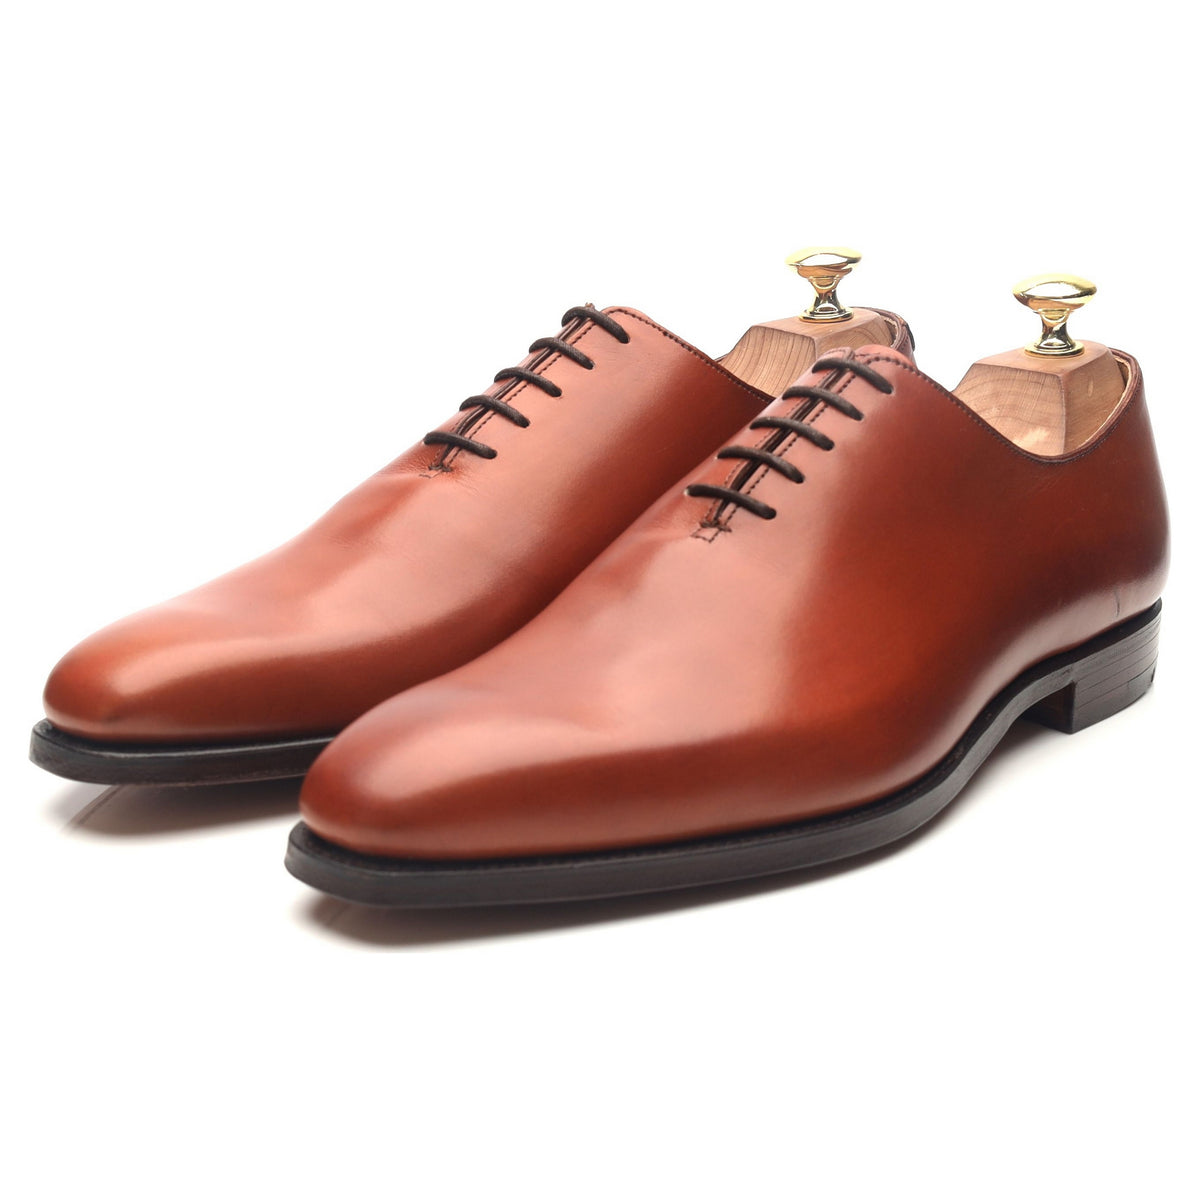 Alex' Tan Brown Leather Wholecut Oxford UK 8.5 E - Abbot's Shoes